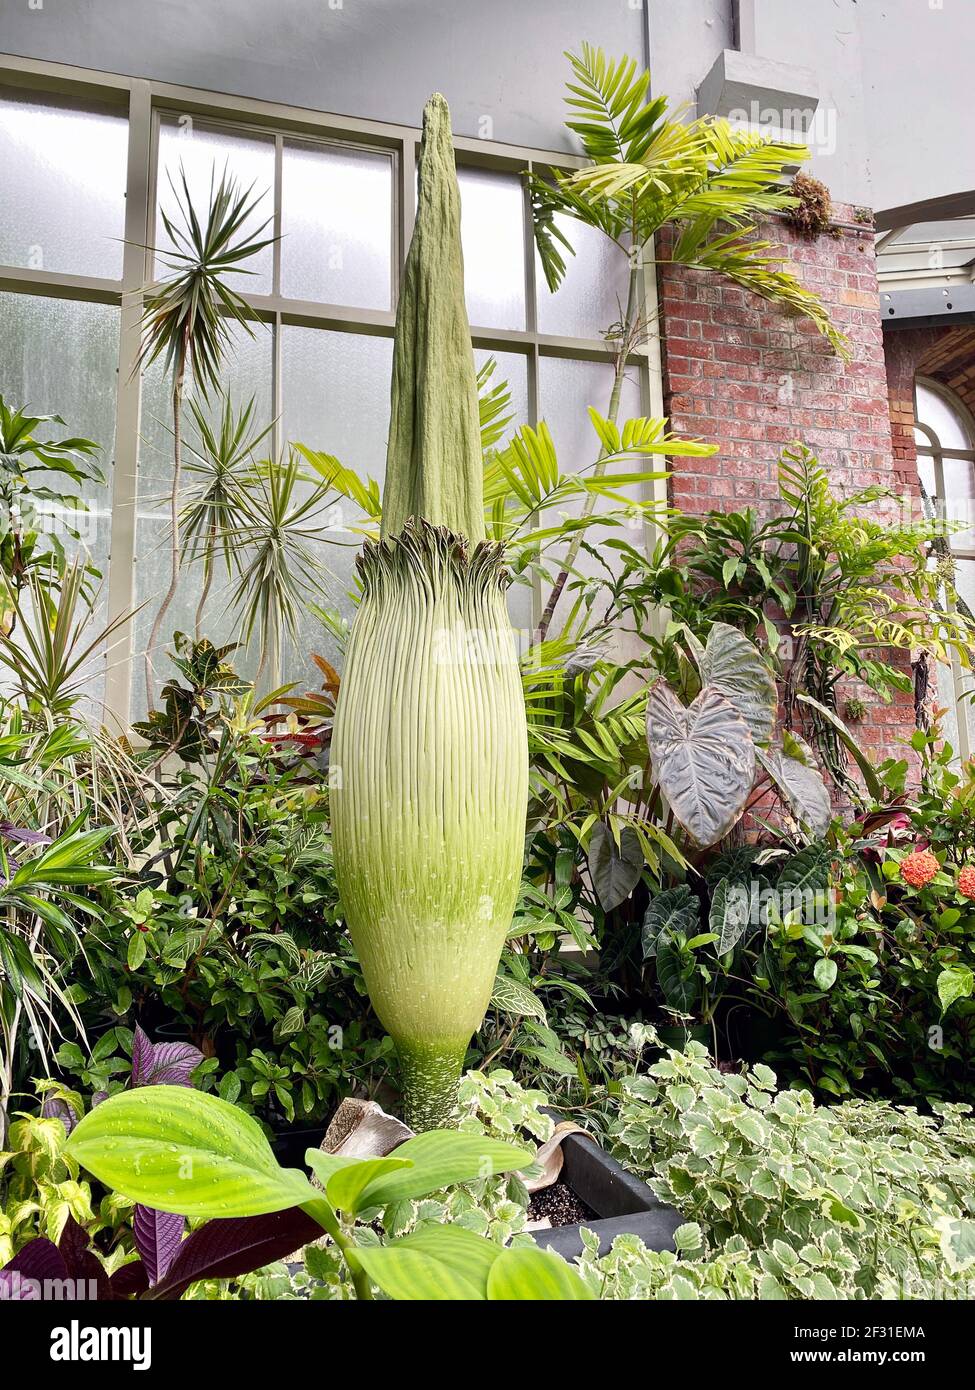 Amorphallus titanum, der titan arum, ist eine blühende Pflanze mit dem größten unverzweigten Blütenstand der Welt. Die Talipot-Palme, Corypha umbracu Stockfoto